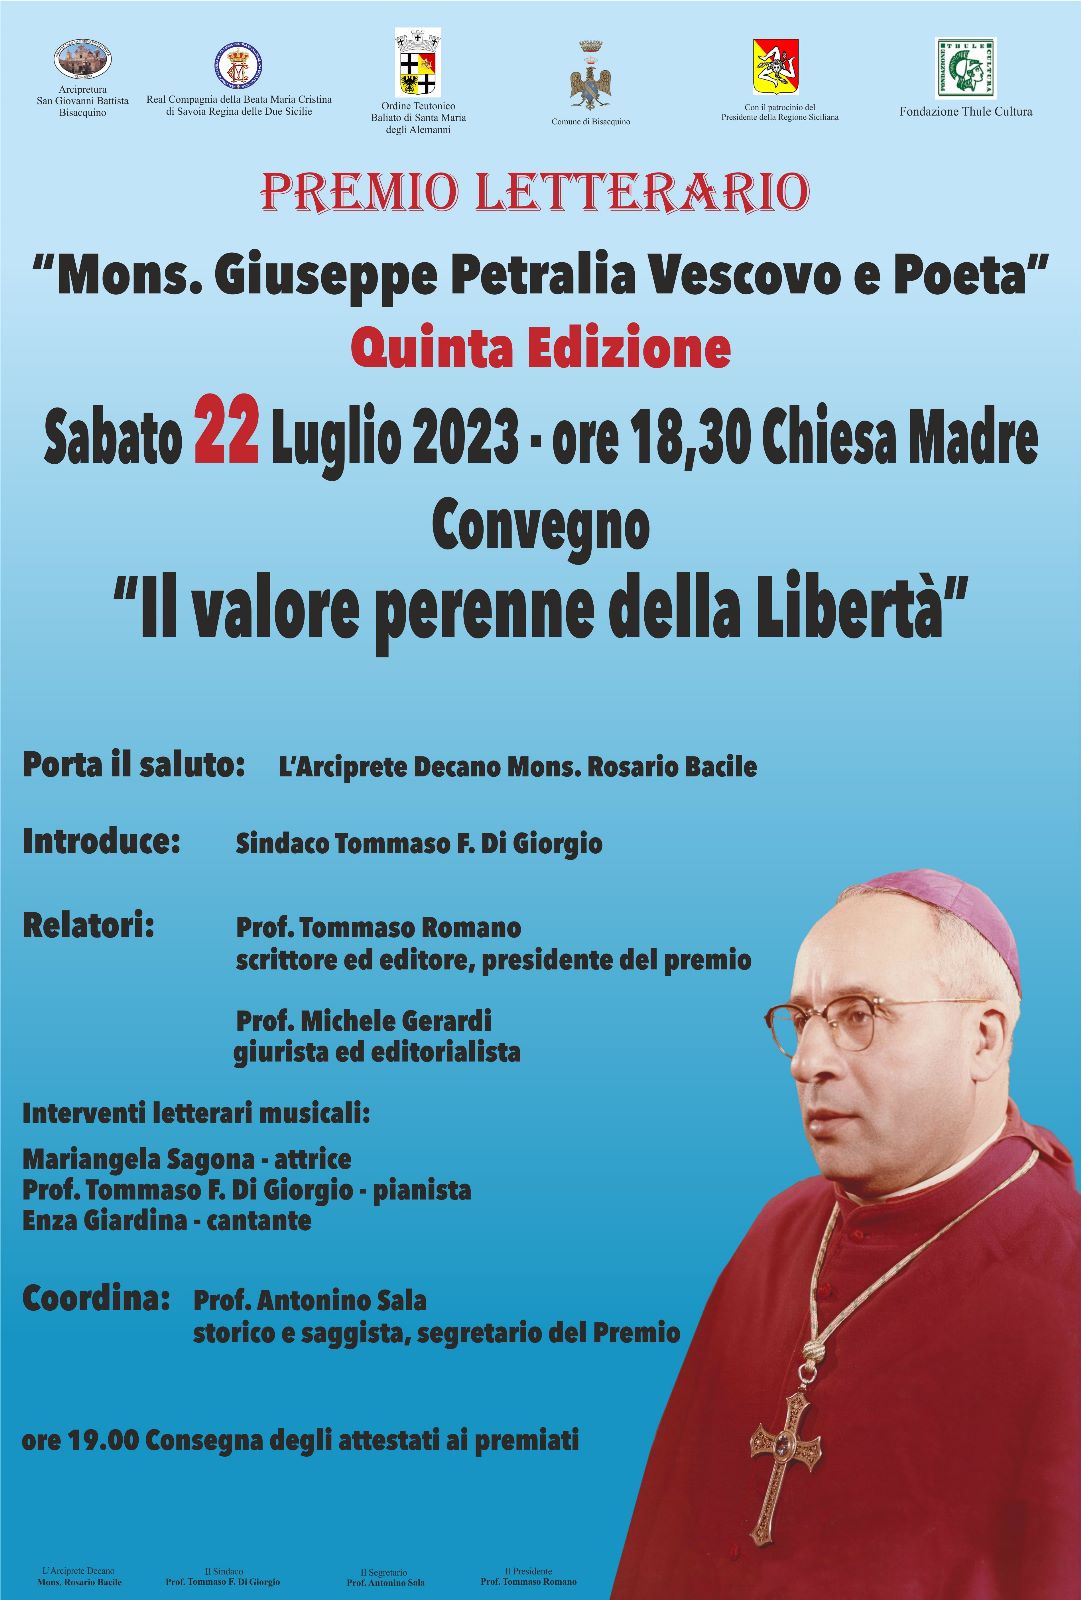 Quinta edizione del premio letterario "Mons. Giuseppe Petralia Vescovo e Poeta", sabato 22 luglio 2023 a Bisacquino  